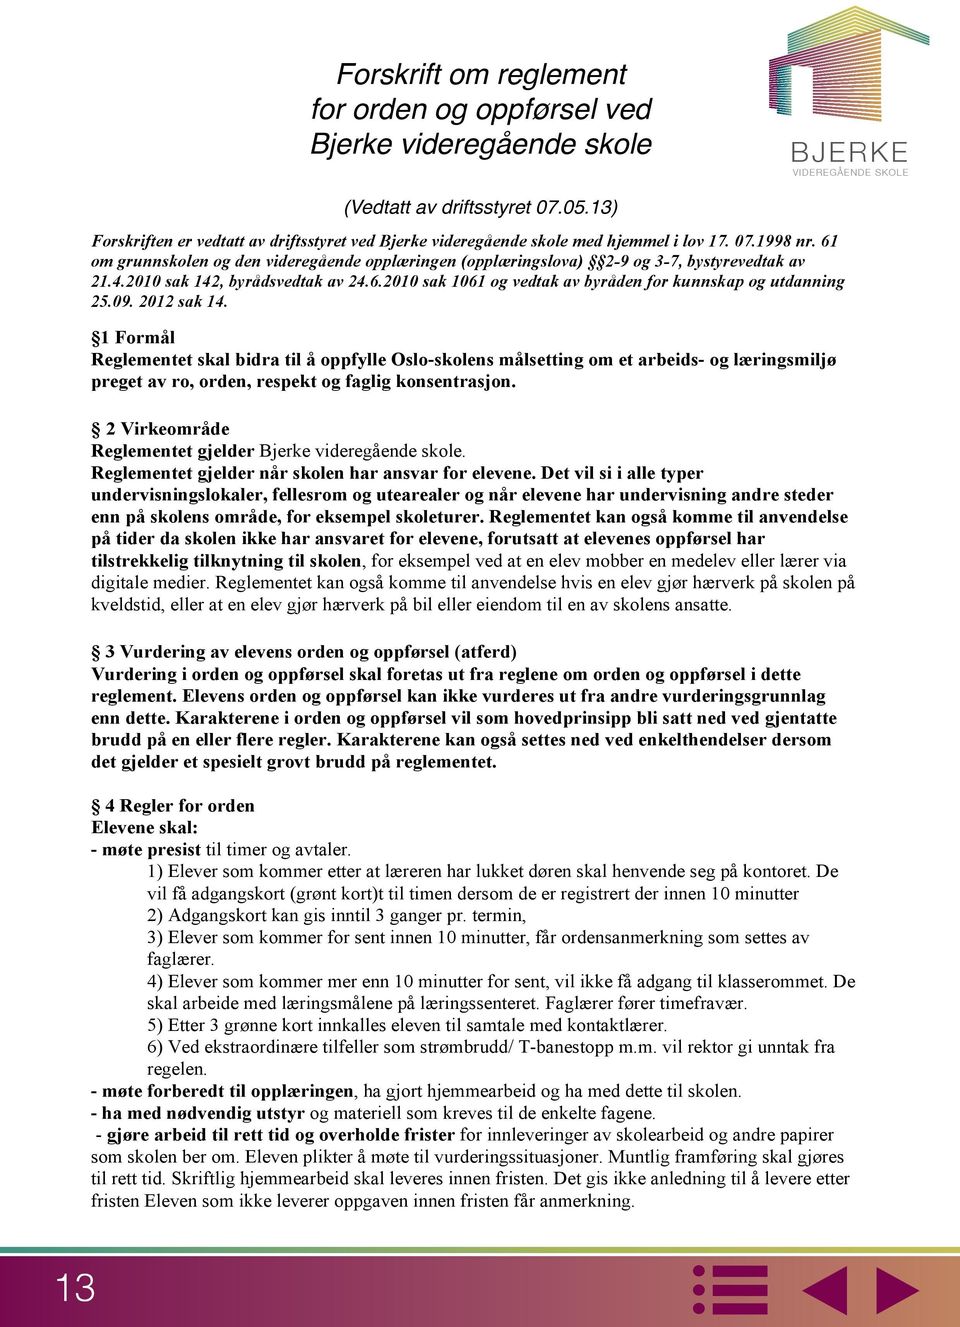 13) (Vedtatt av driftsstyret 07.05.13) Forskriften er vedtatt av driftsstyret ved Bjerke videregående skole med hjemmel i lov 17. 07.1998 nr.